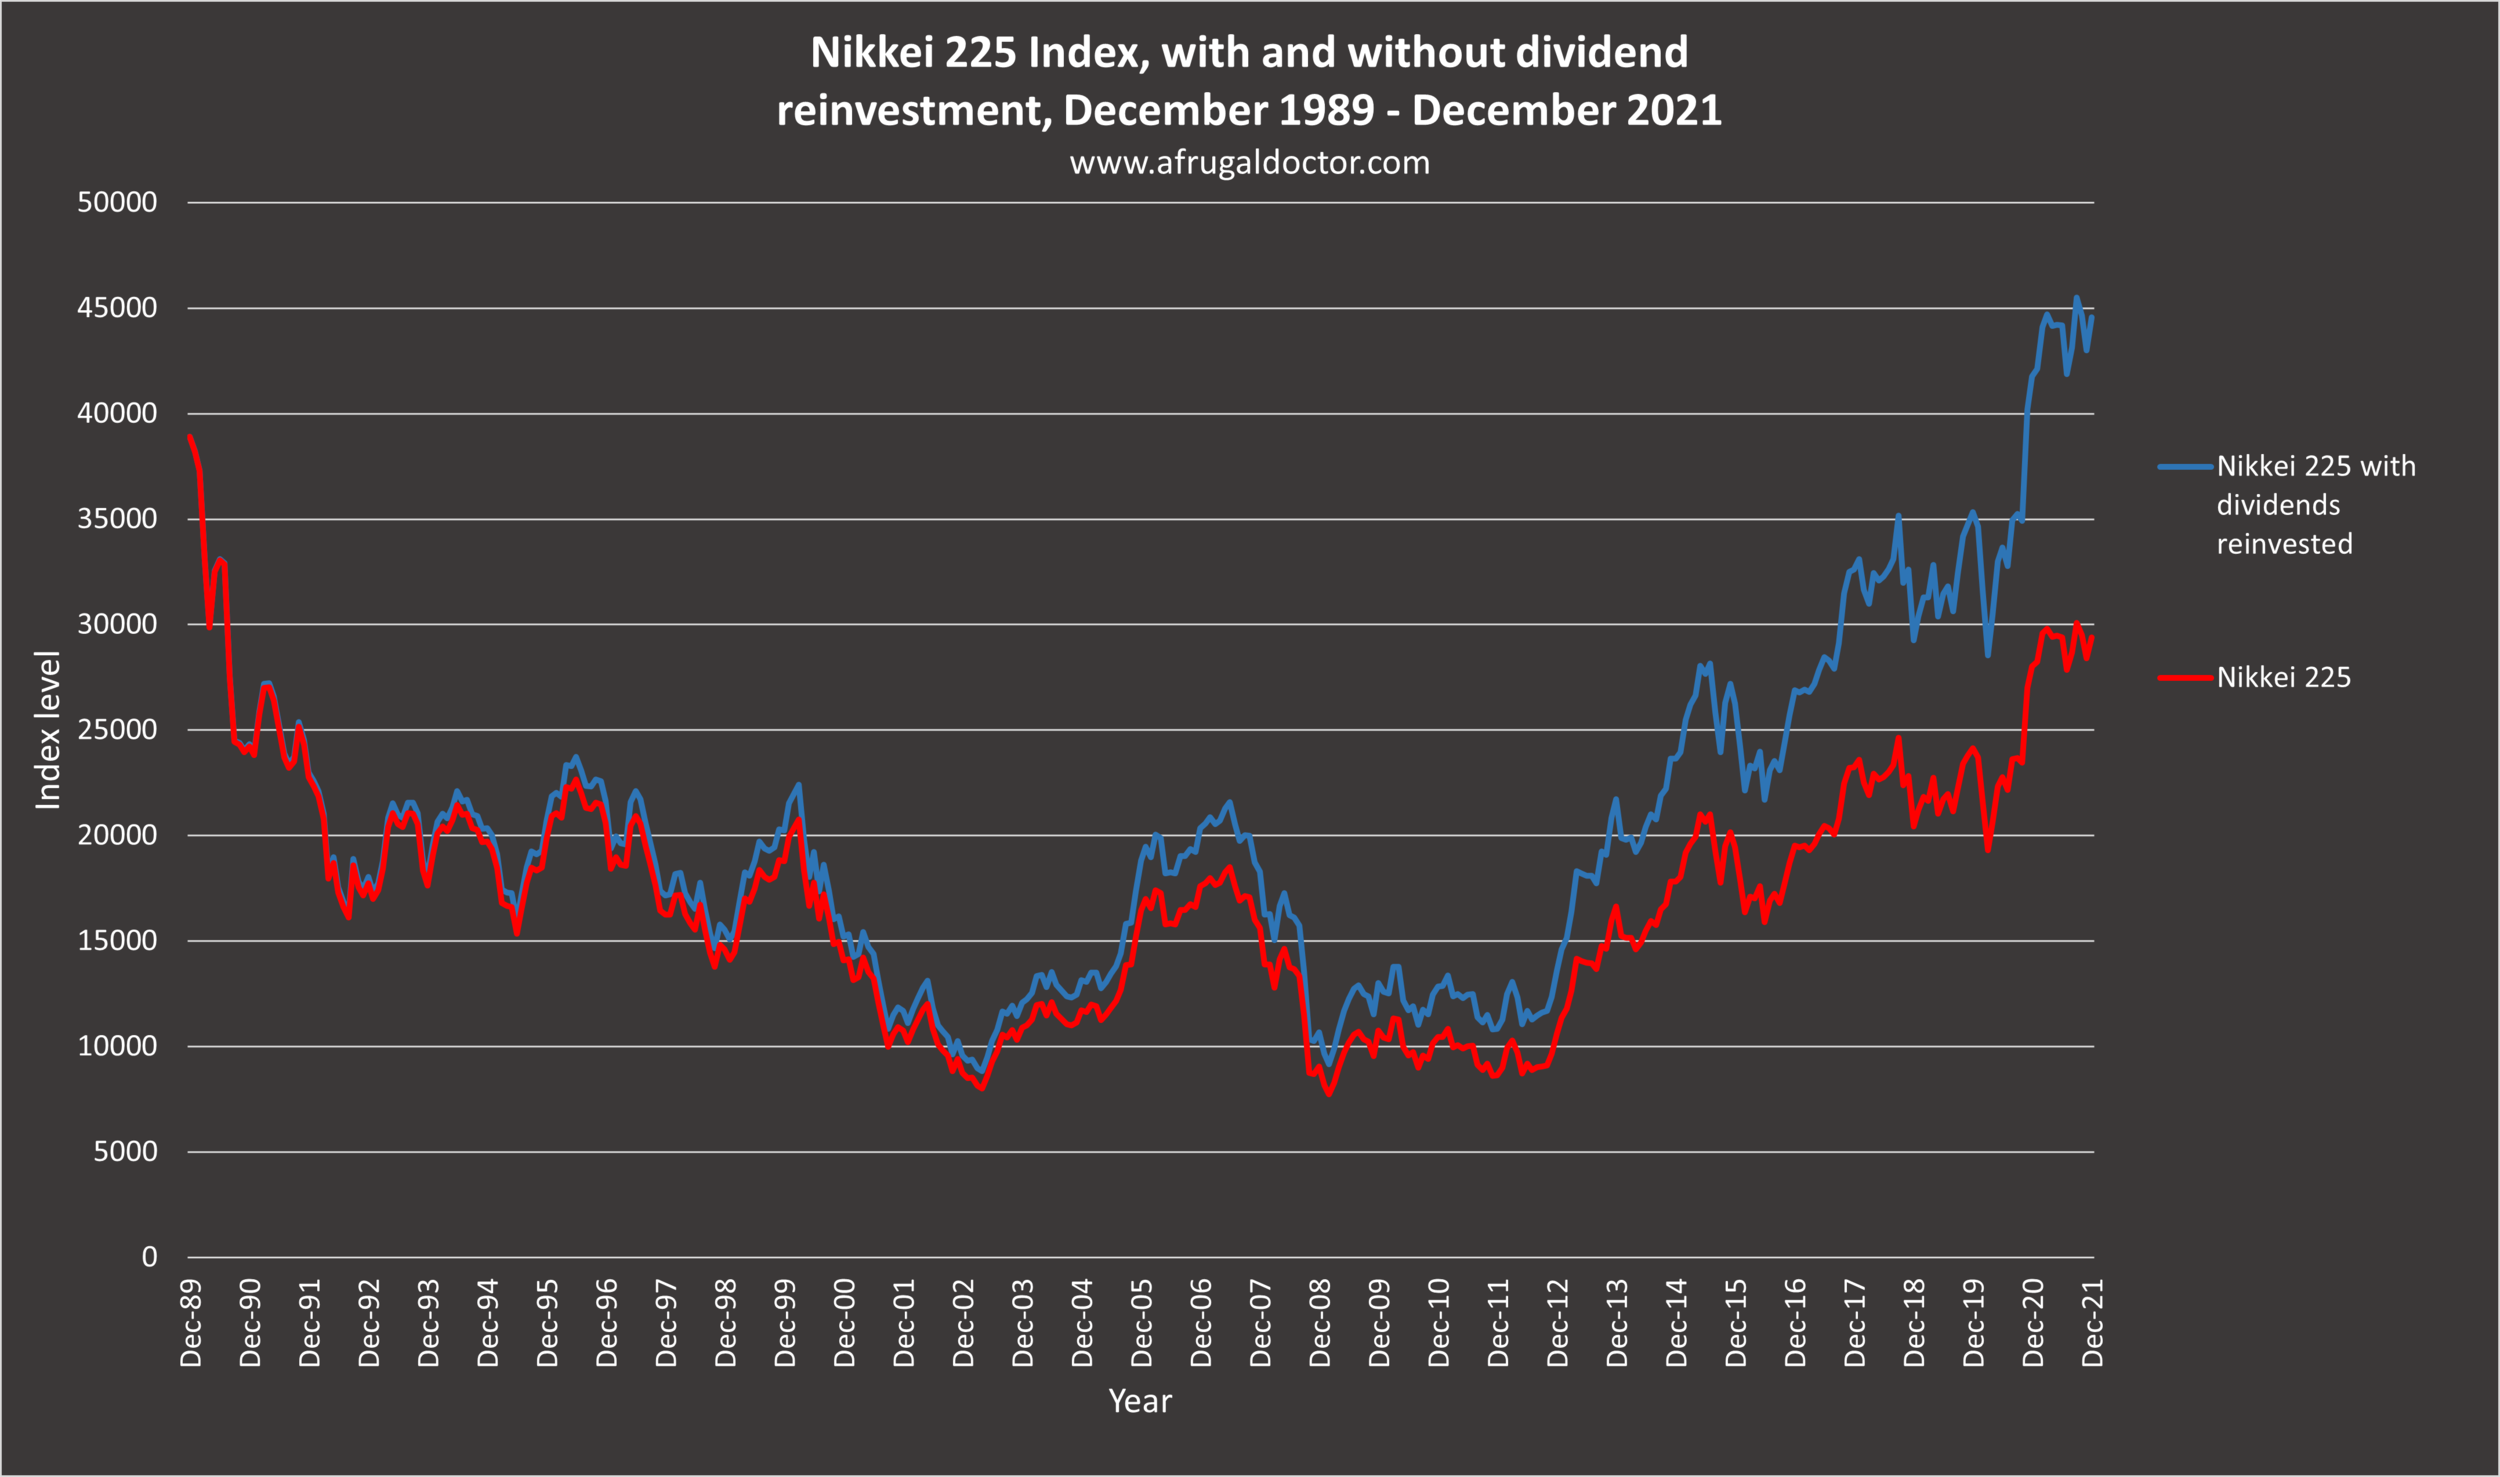 nikkei index